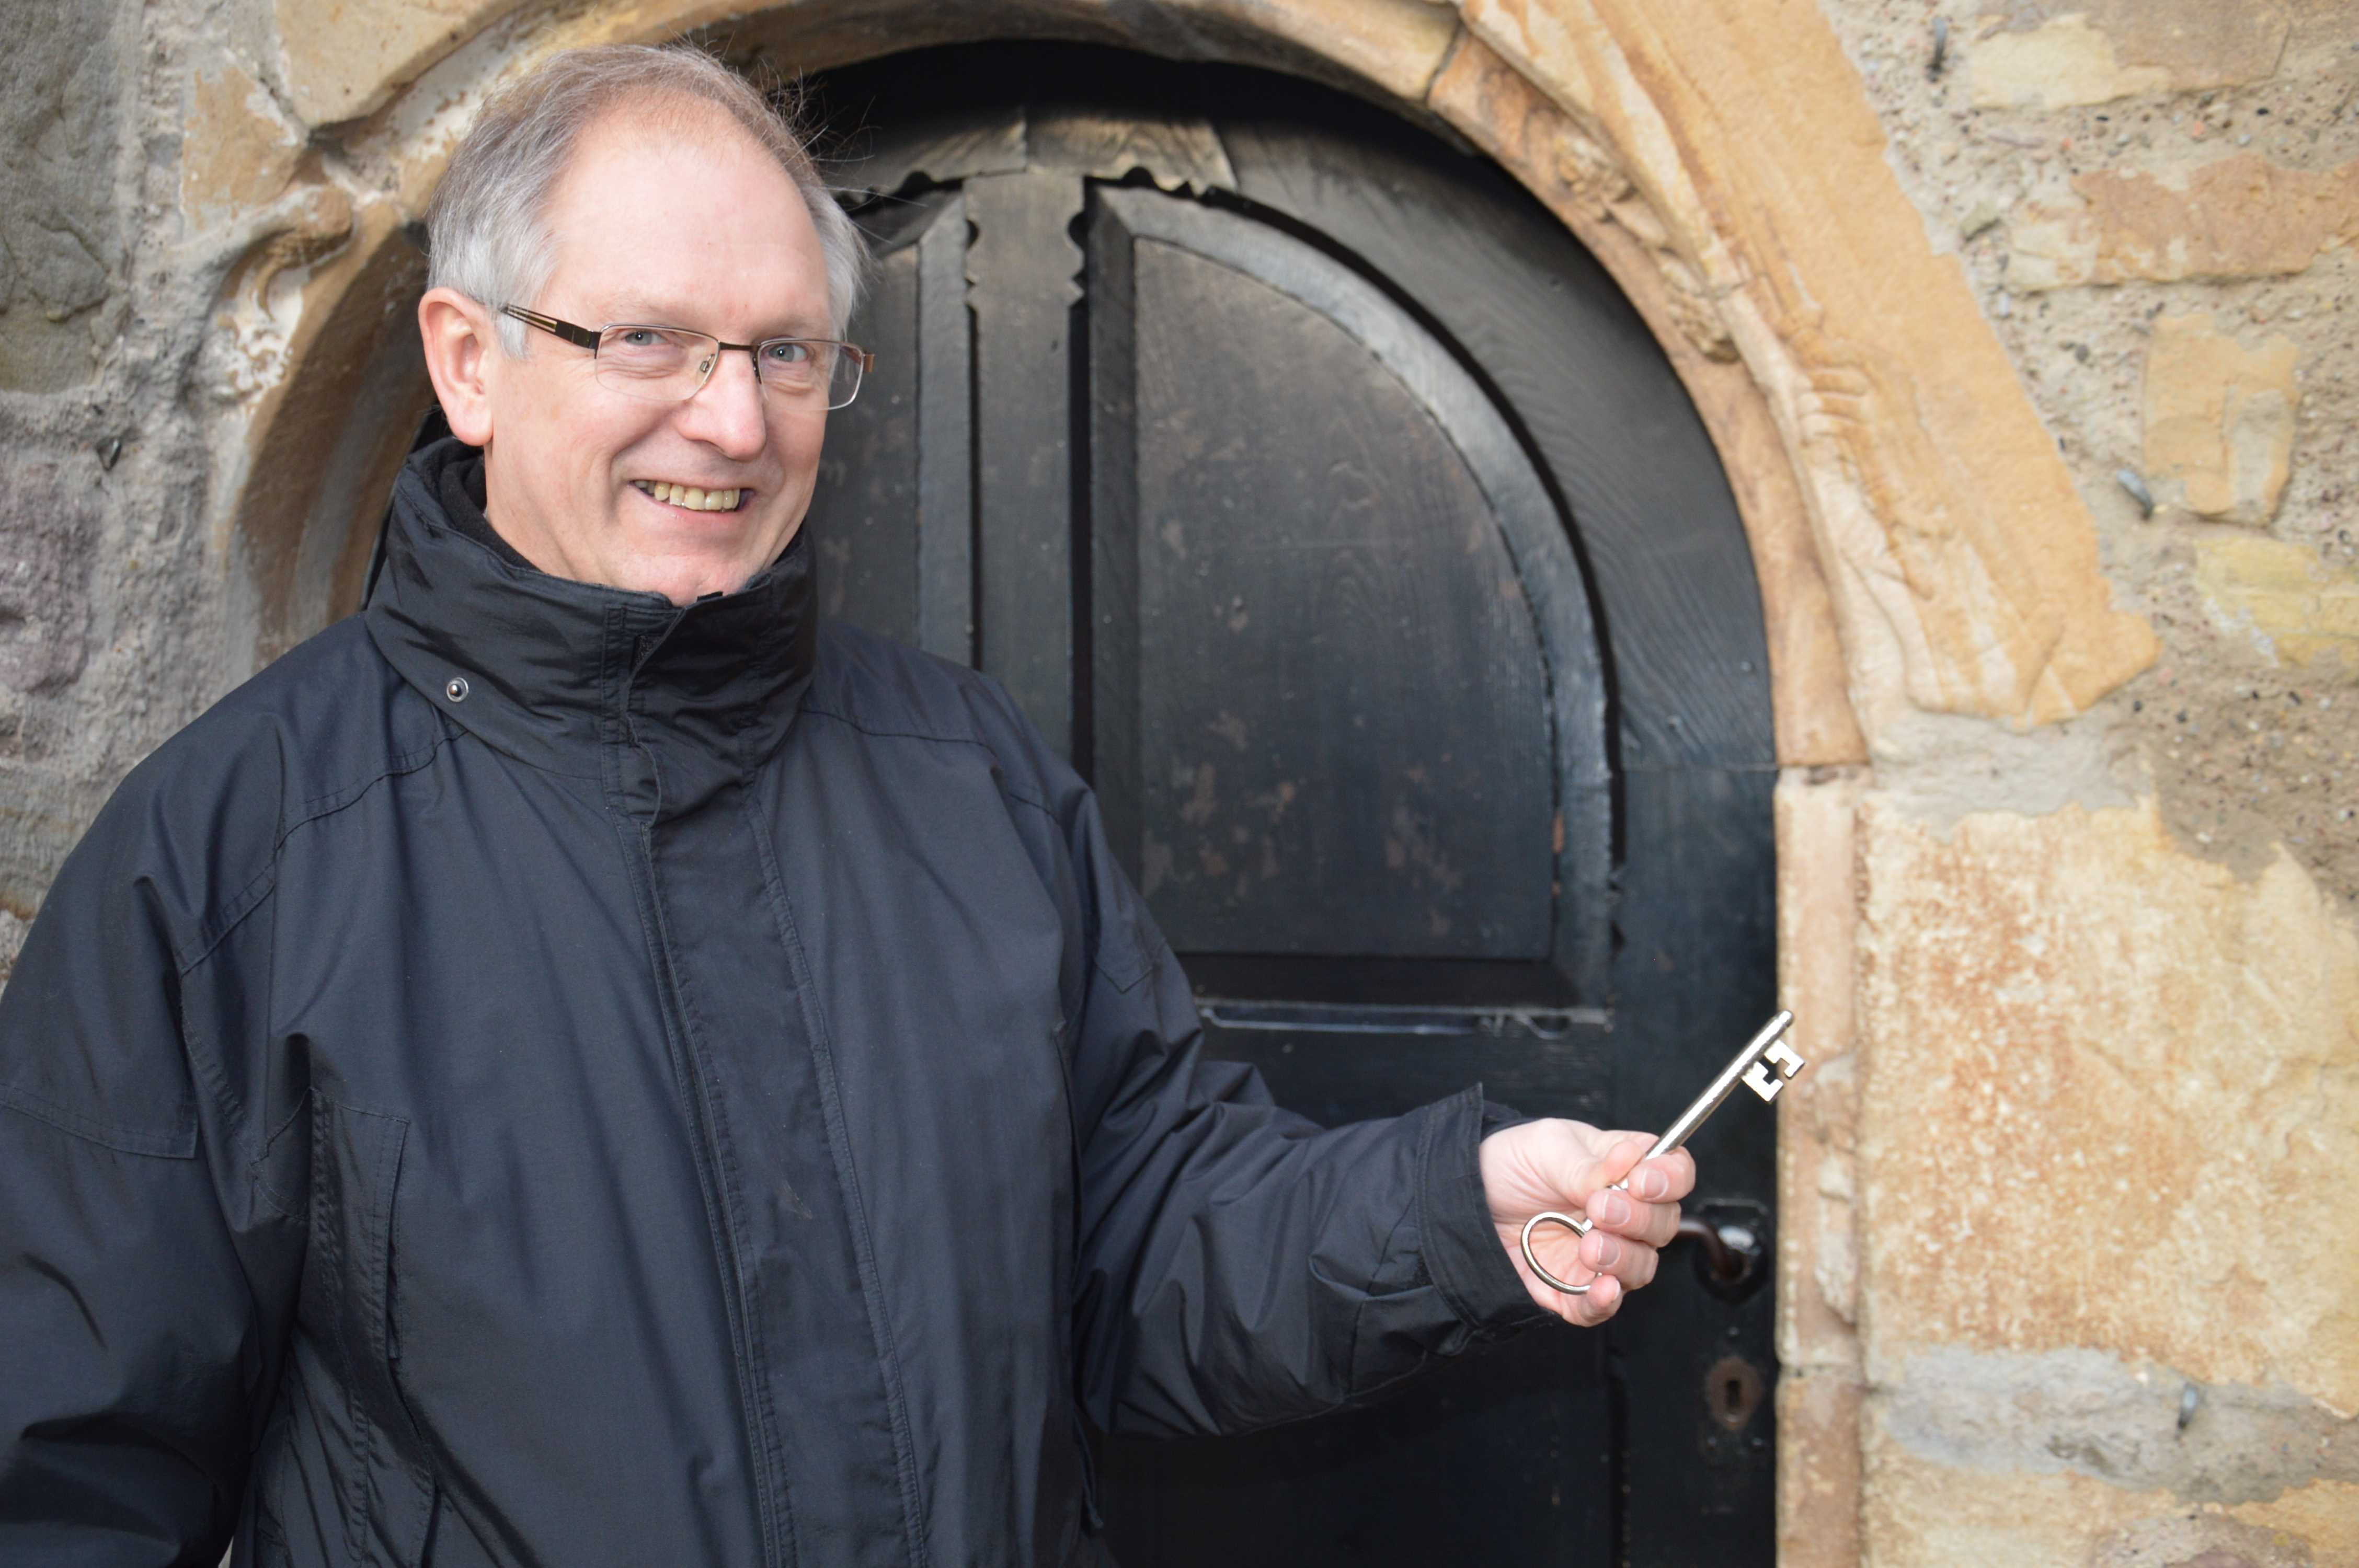 Pastor Reuning zeigt mit dem Kirchenschlüssel auf die in Sandstein eingearbeitete Hand, die einen Schlüssel hält.